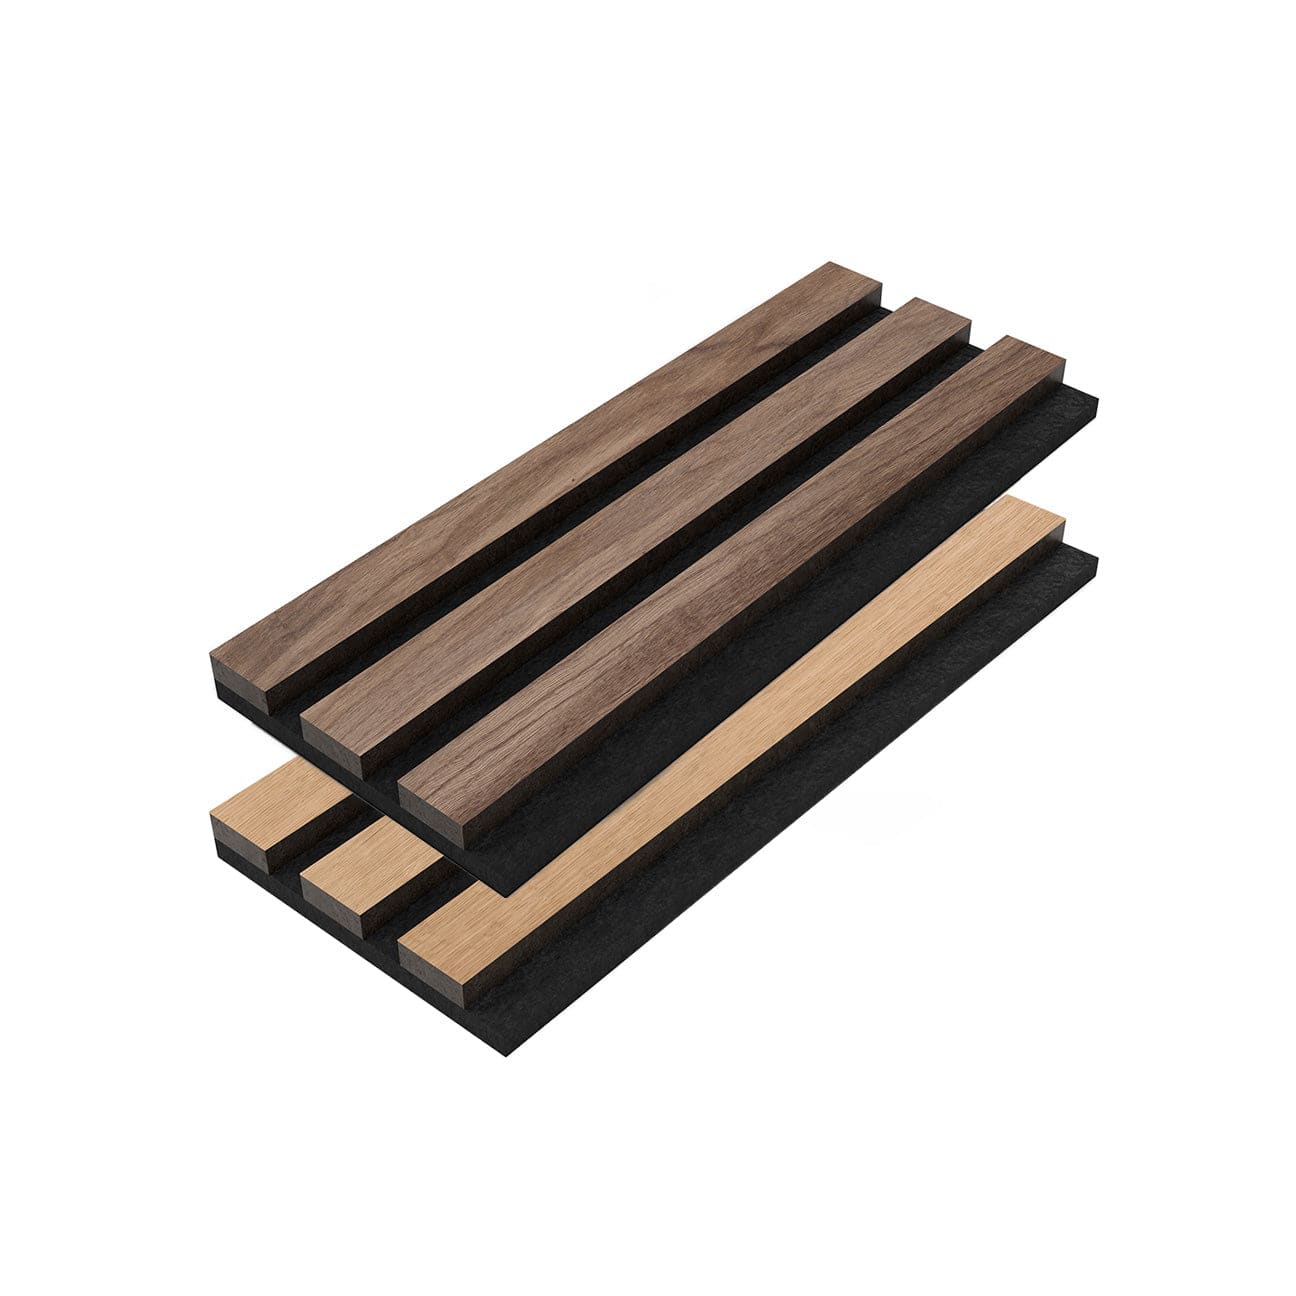 Walnut Solid Wood Slat Wall Panels - For Sale, Buy Online